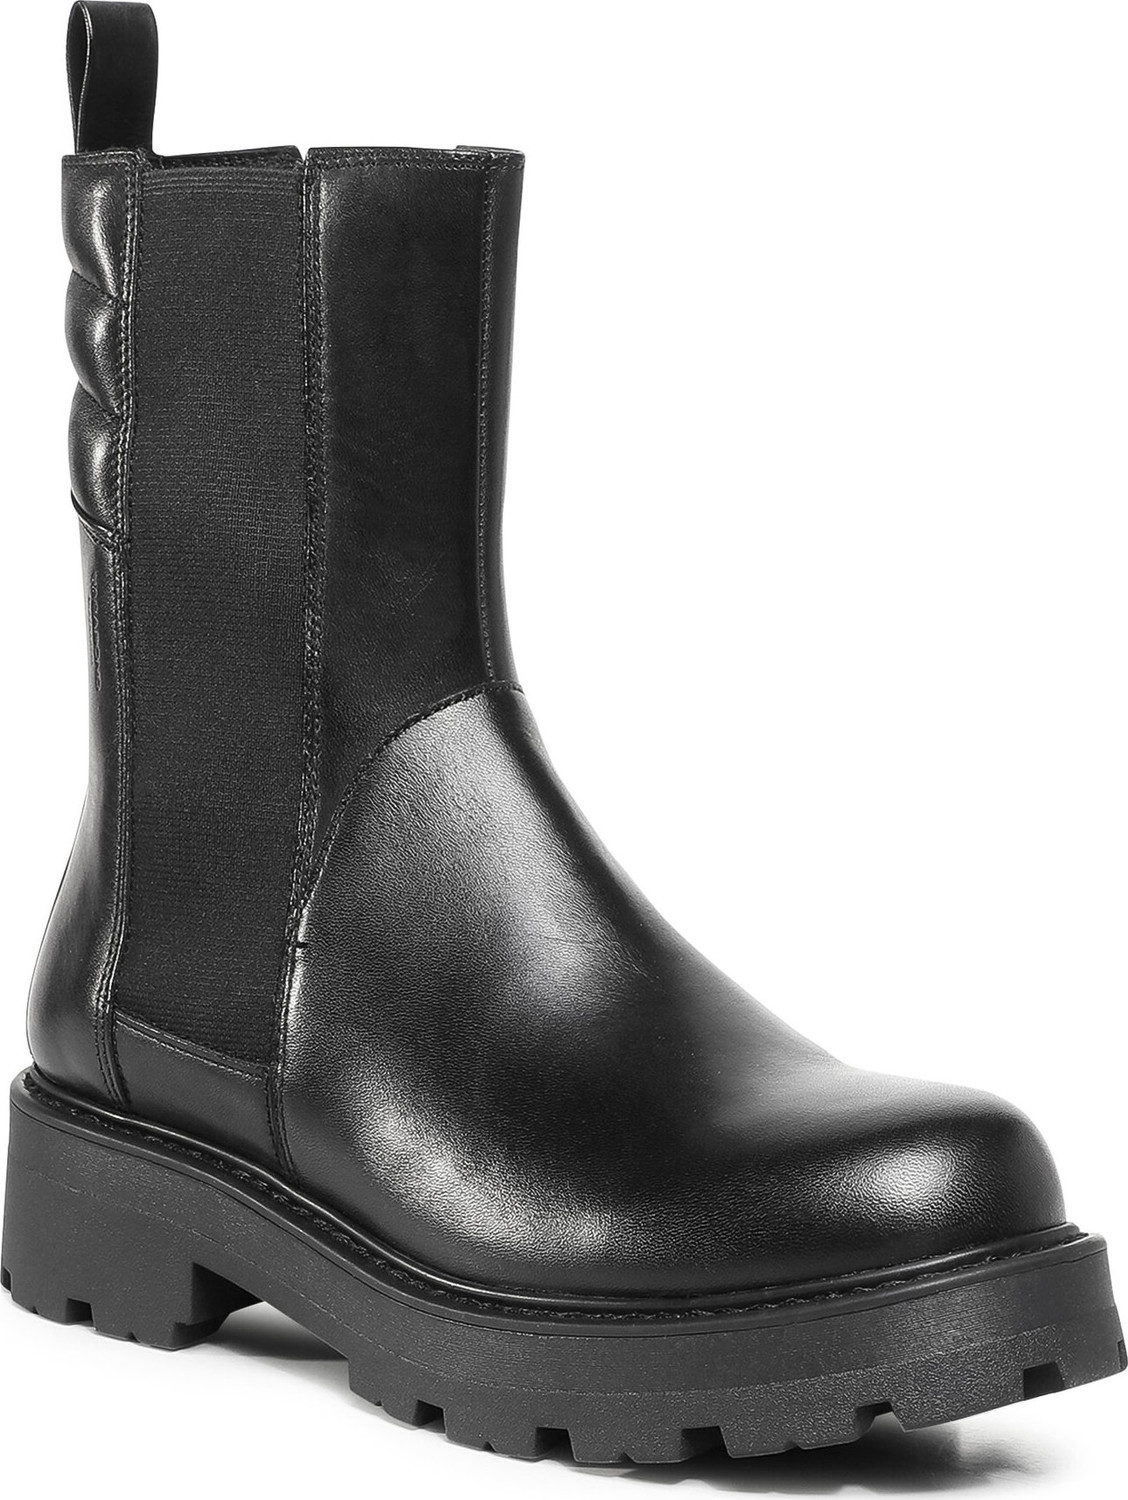 Kotníková obuv s elastickým prvkem Vagabond Cosmo 2.0 4849-401-20 Black